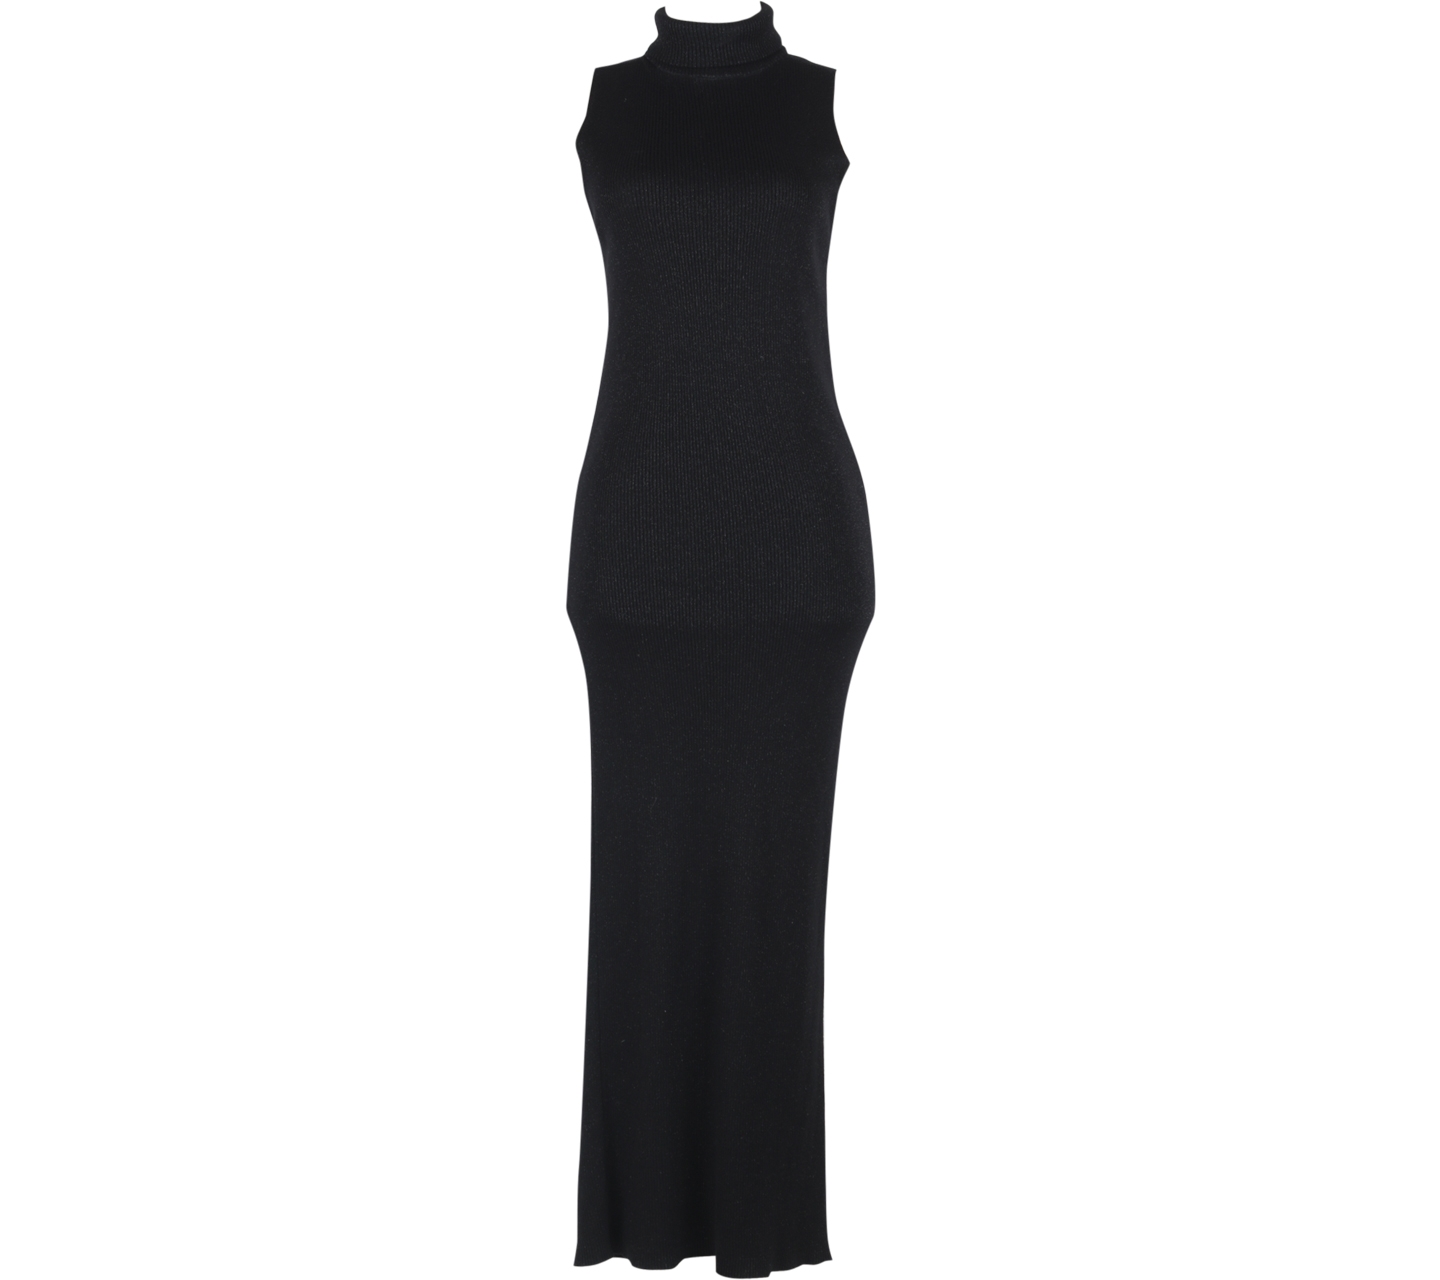 Zara Black Glittery Long Dress